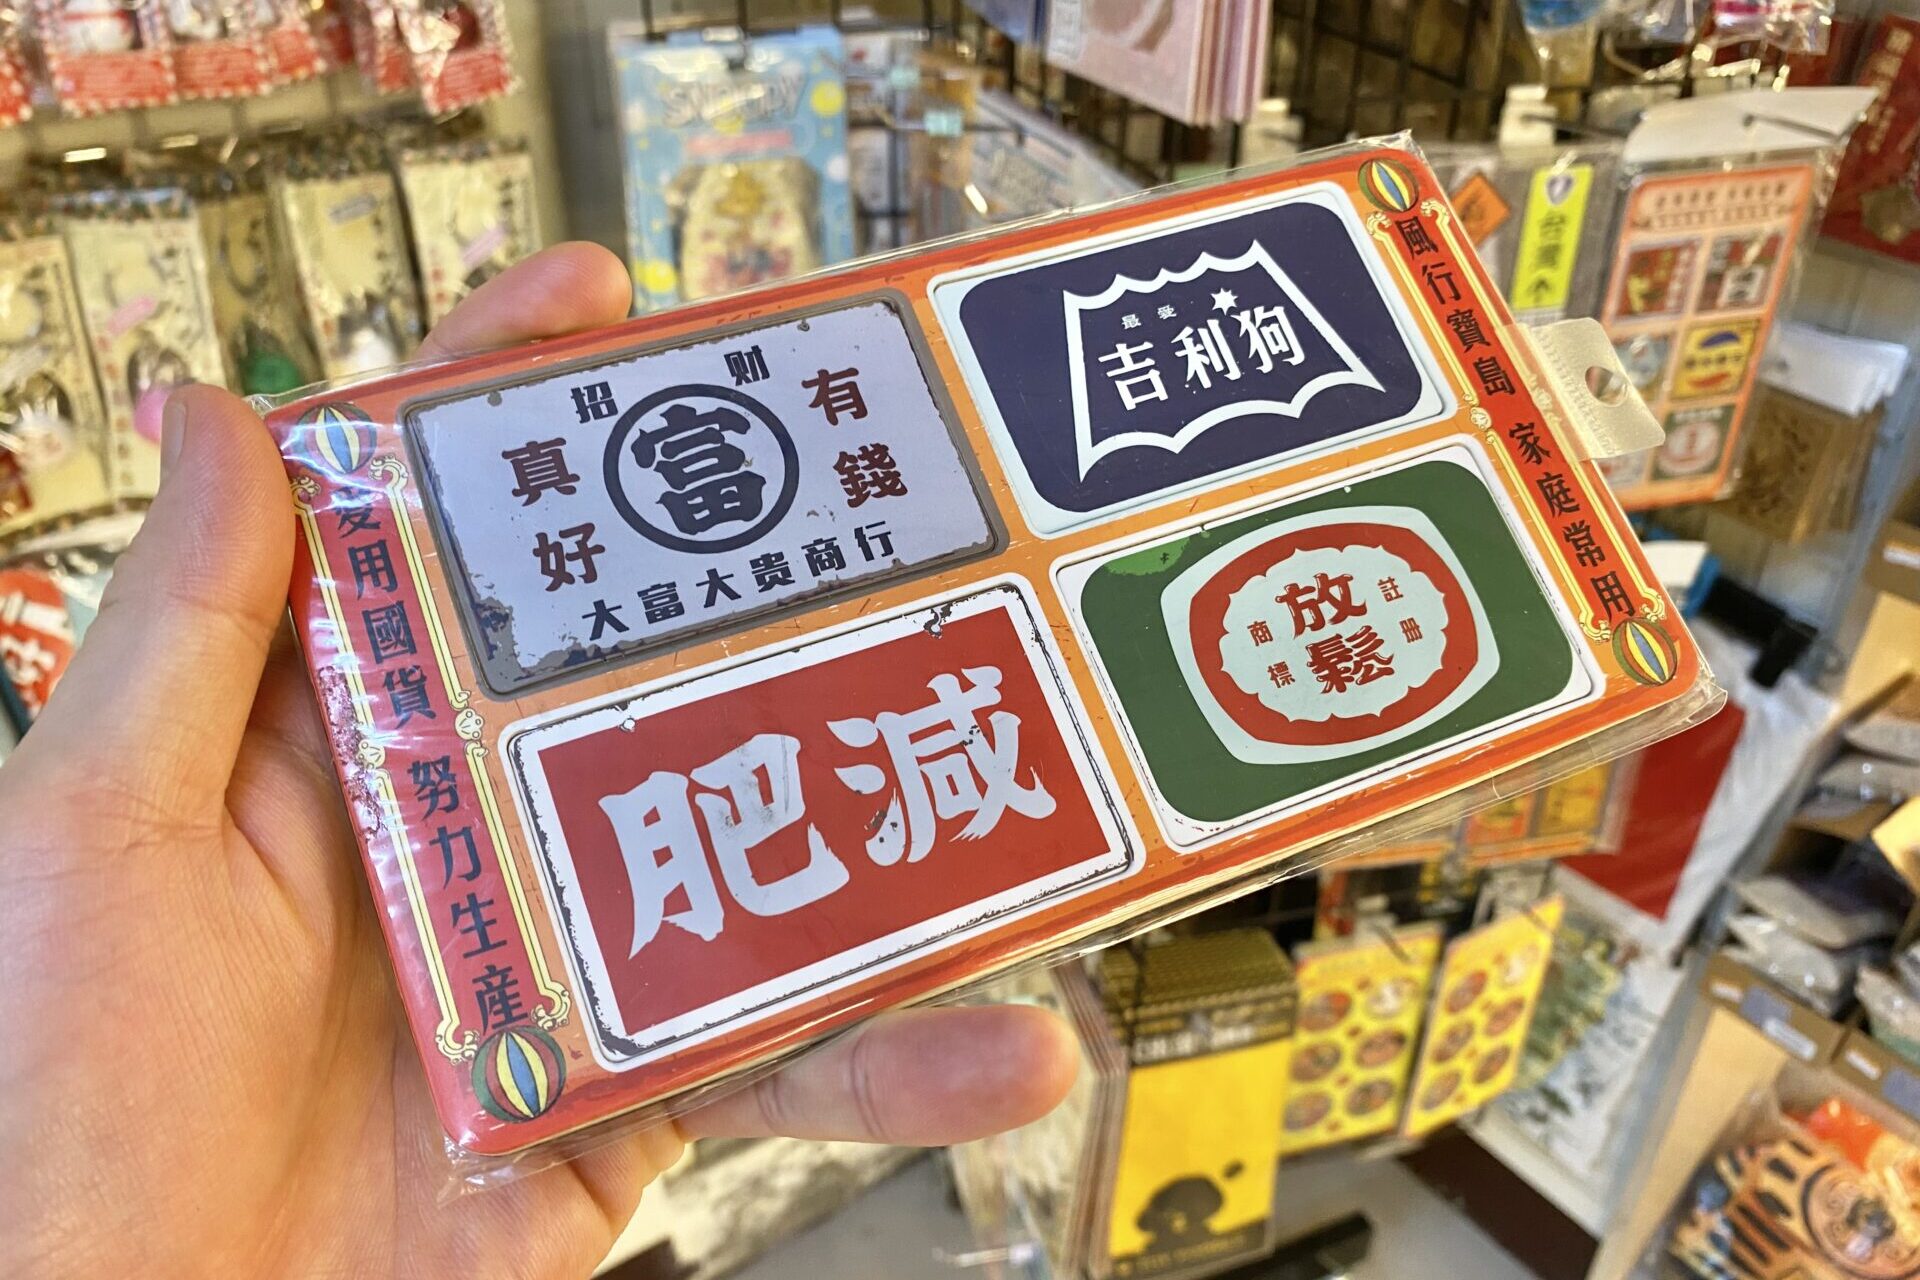 中国語でダイエットとか色々書かれた磁石